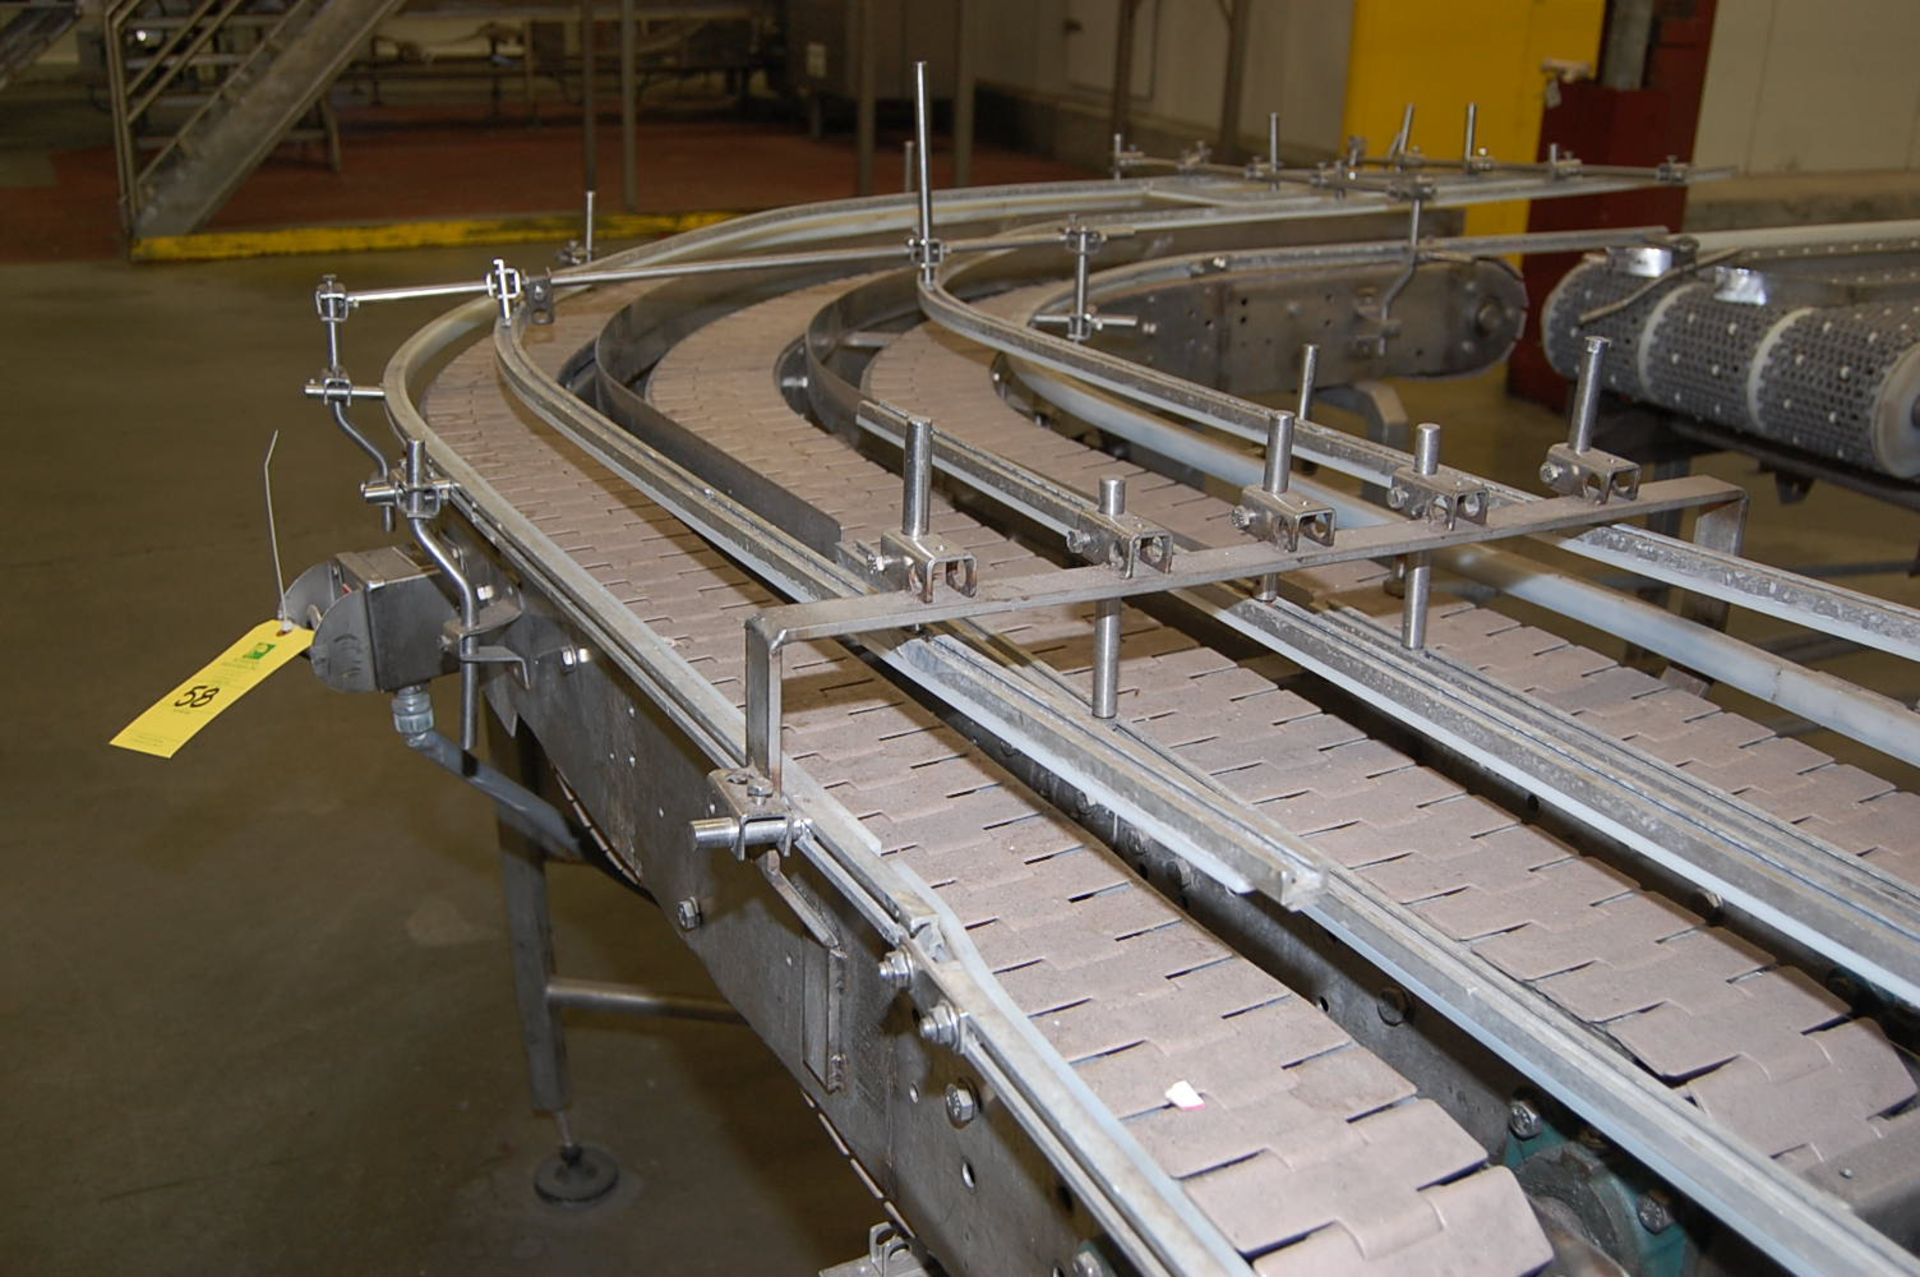 Arrowhead Conveyor - 3-Lane Corner Conveyor, SS Frame, 96 in. Length - Image 2 of 2